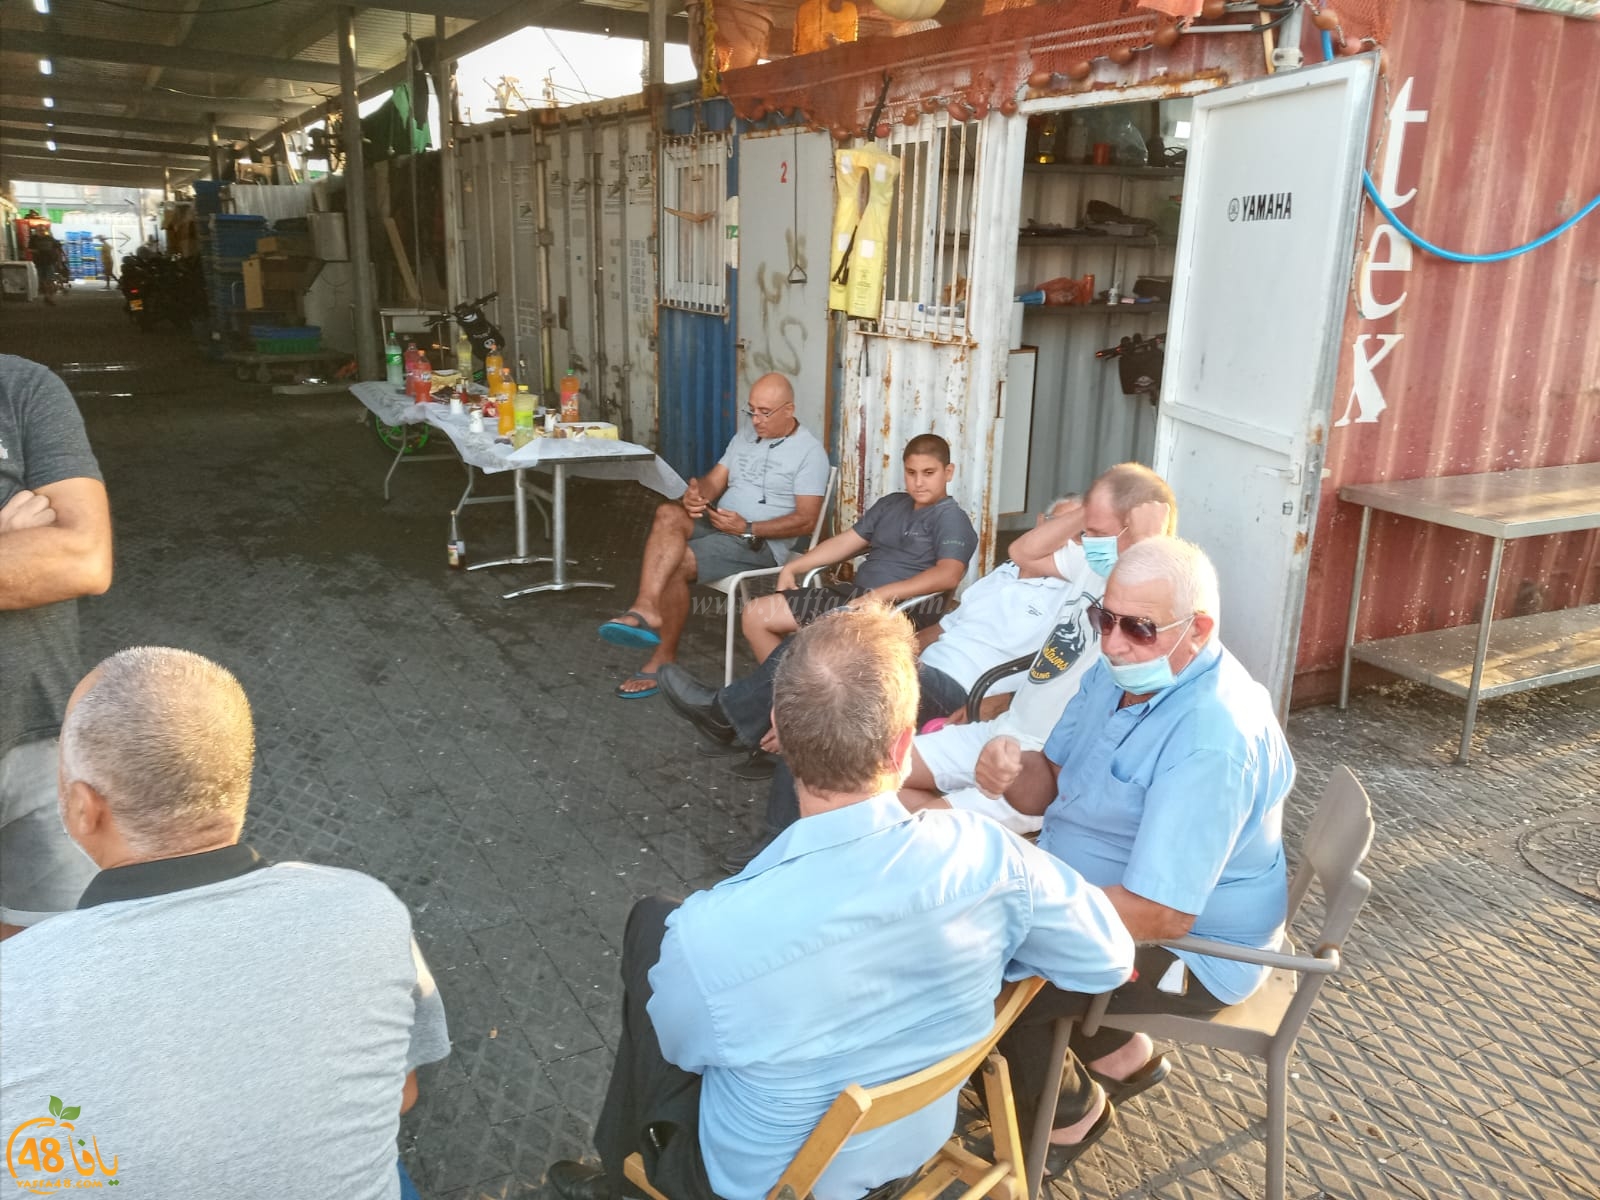  لقاء يجمع صيادي ميناء يافا من كافة الأديان بمبادرة جمعية مرساة يافا 